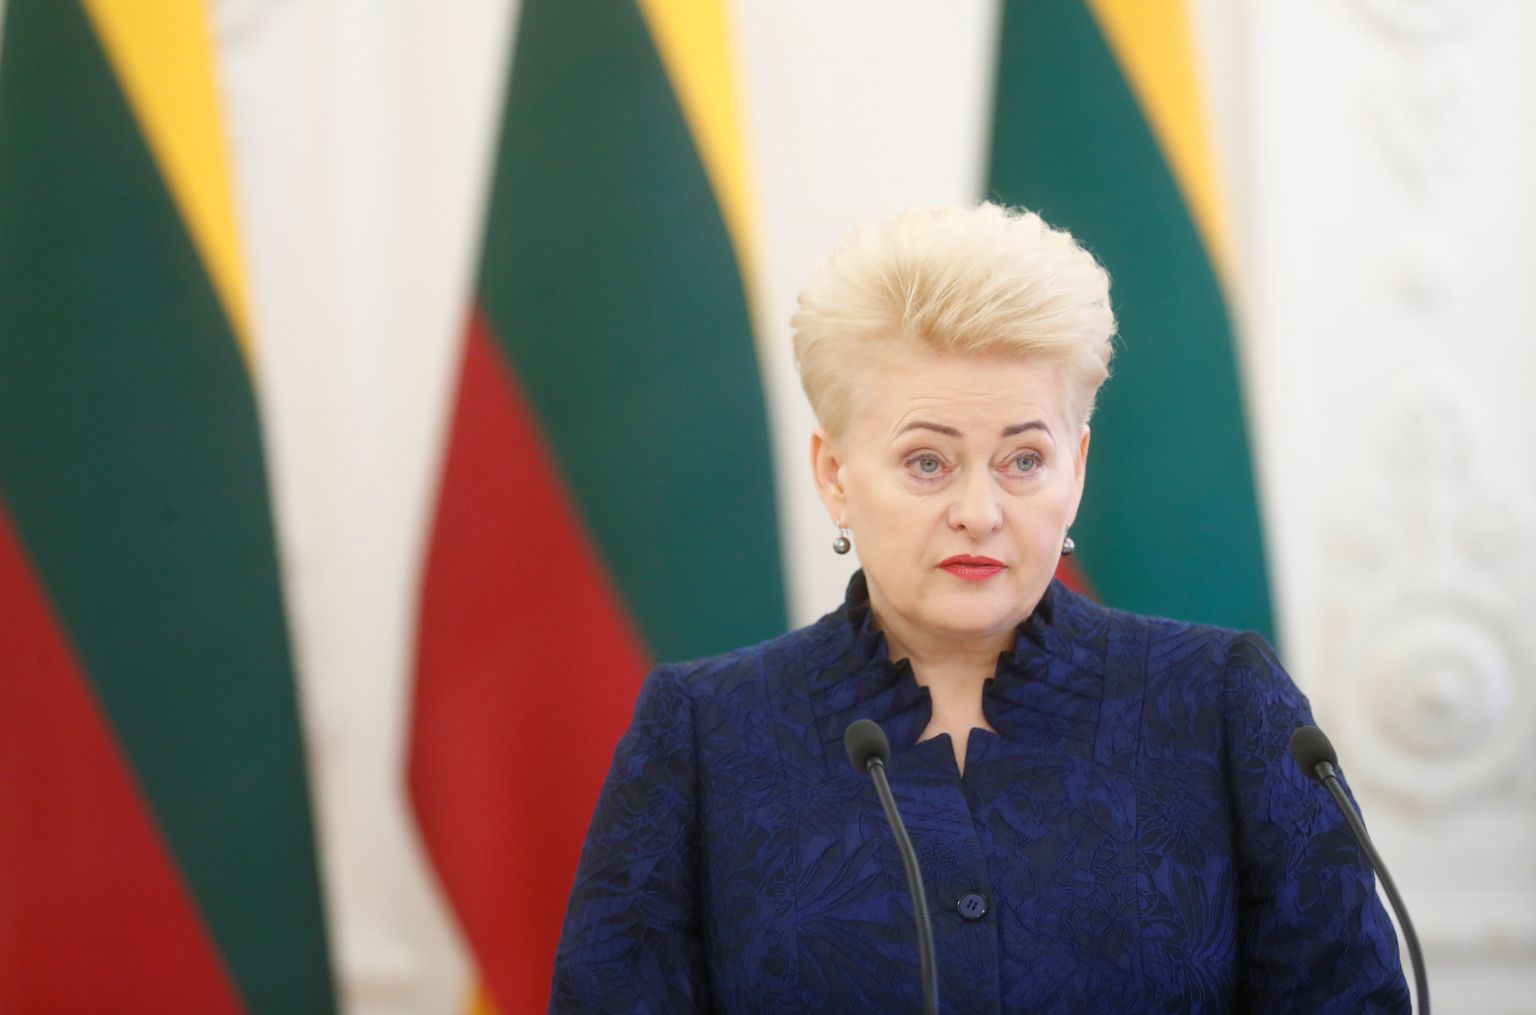 Leedu president Dalia Grybauskaite tervitas suurinvesteeringut.